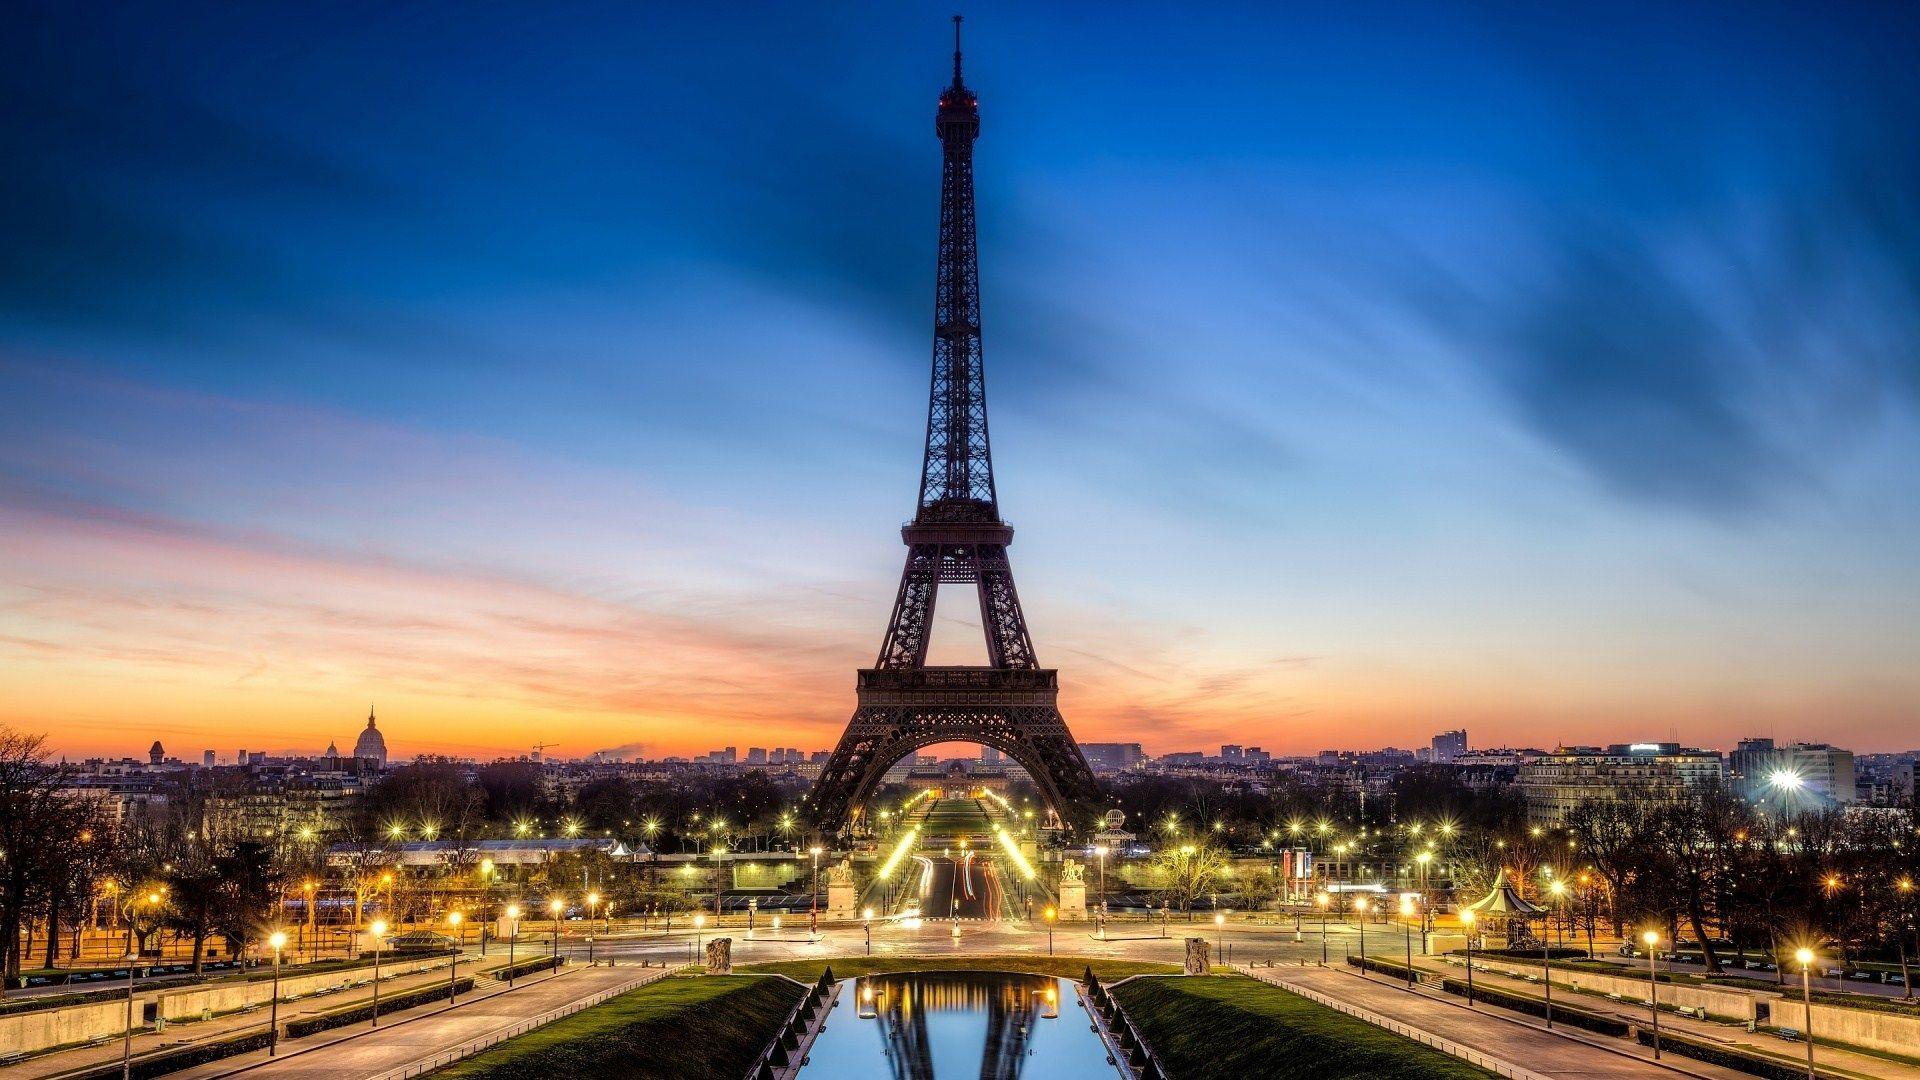 عکس برج ایفل واقعی در پاریس